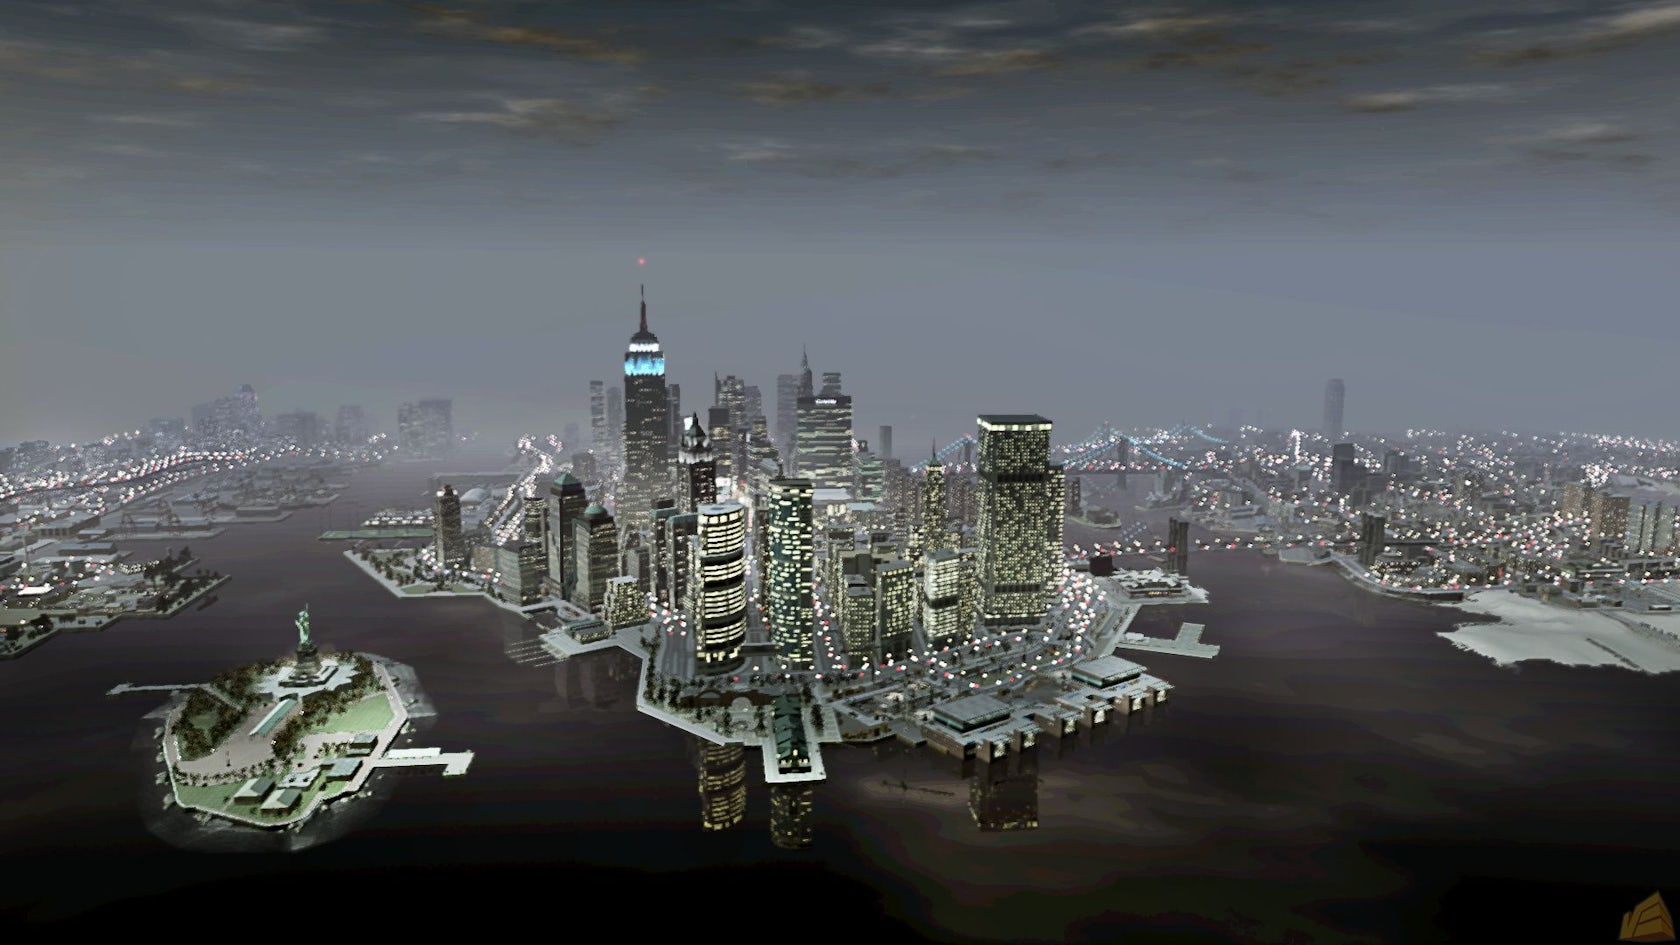 Liberty City in GTA III Era - Grand Theft Wiki, the GTA wiki